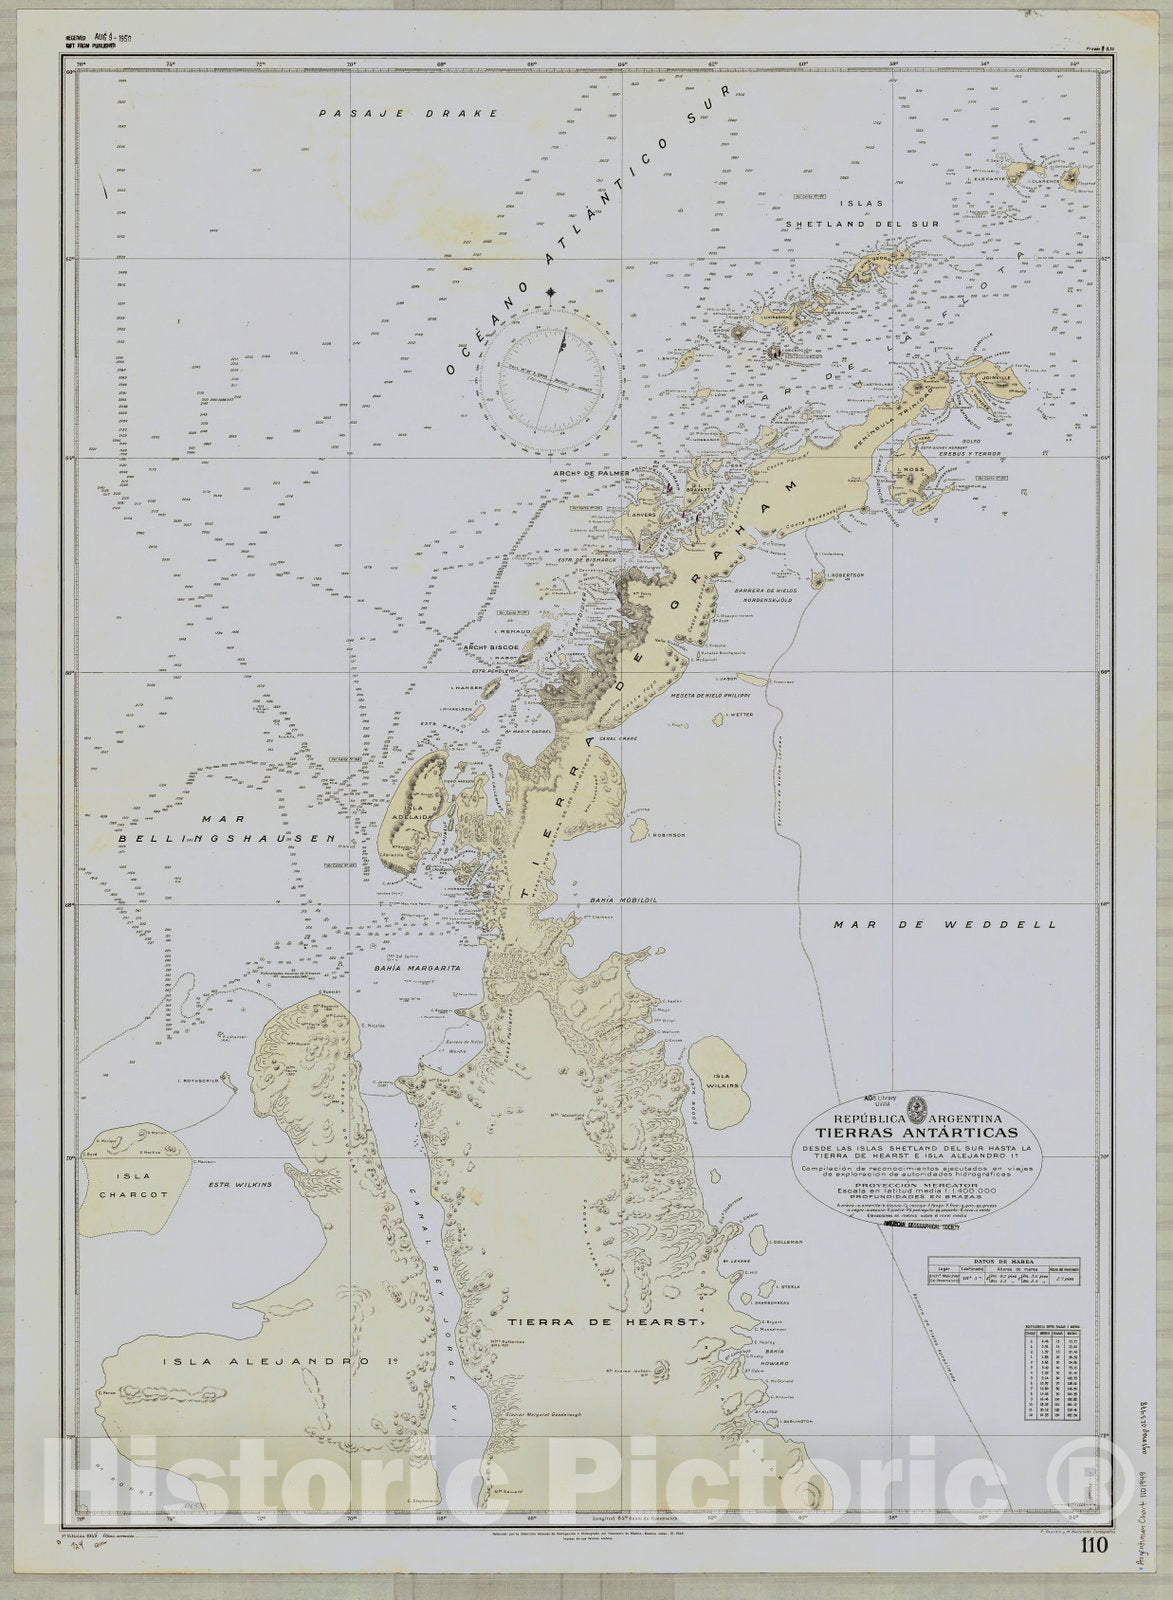 Map : Graham Land, Antarctica 1949, Repu?blica Argentina, Tierras Anta?rticas, desde Las Islas Shetland del Sur hasta la Tierrra de Hearst e Isla Alejandro 1?